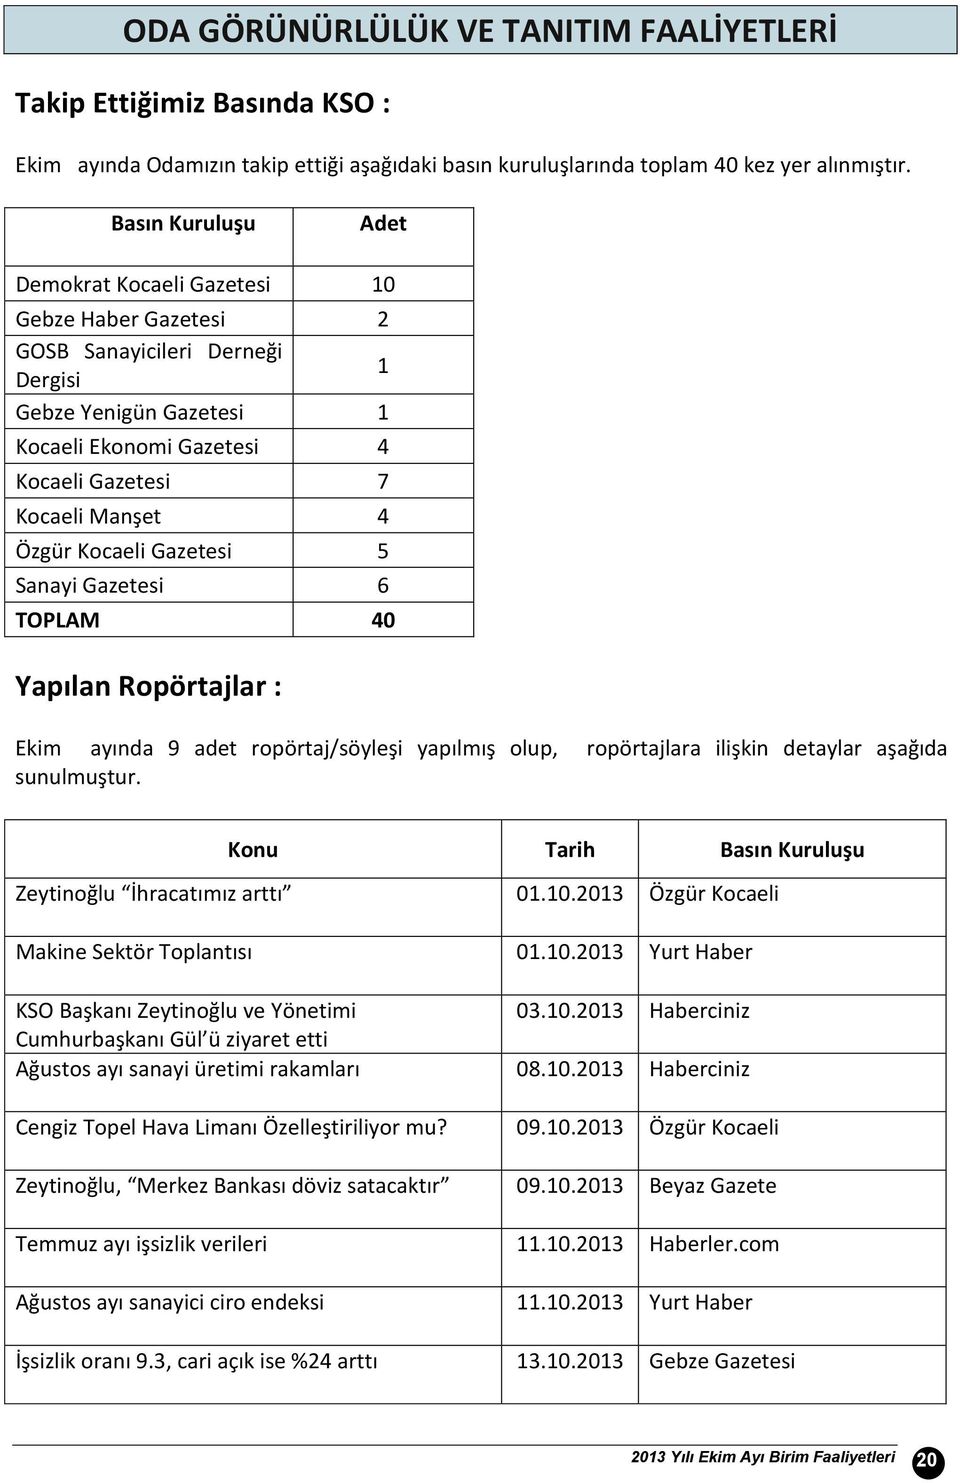 Özgür Kocaeli Gazetesi 5 Sanayi Gazetesi 6 TOPLAM 4 Yapılan Ropörtajlar : Ekim ayında 9 adet ropörtaj/söyleşi yapılmış olup, ropörtajlara ilişkin detaylar aşağıda sunulmuştur.